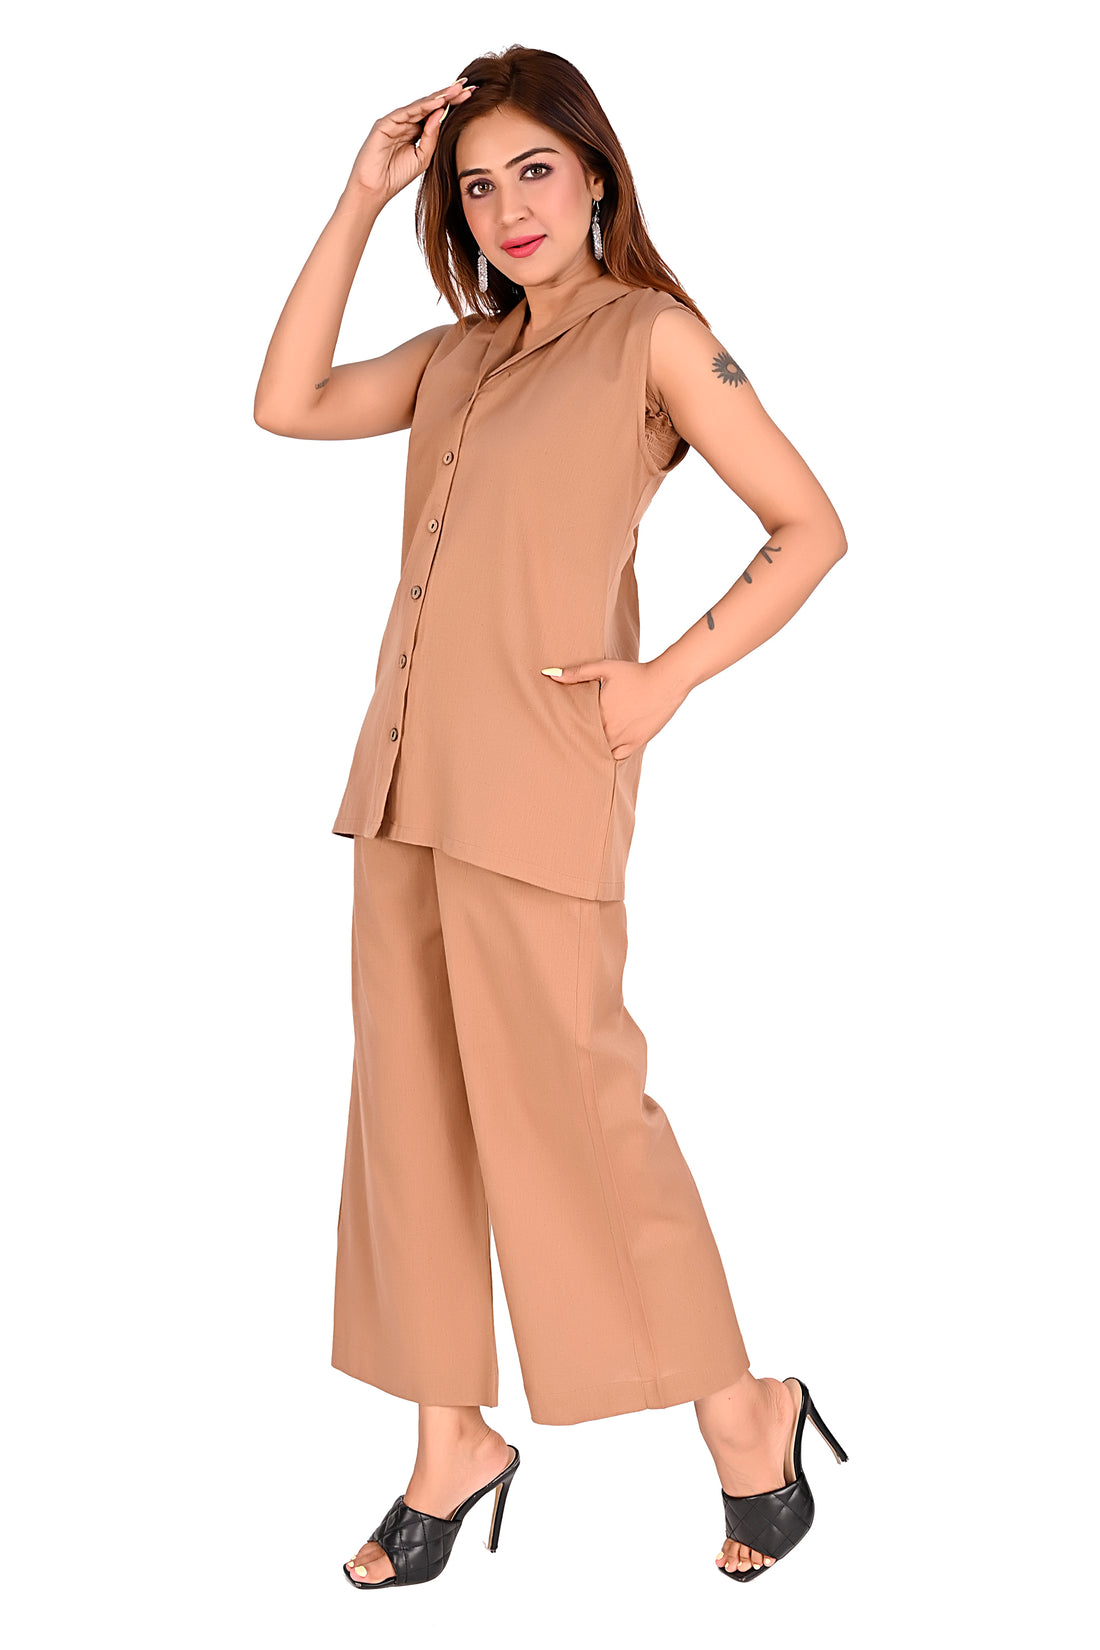 Nirmal online Premium cotton Co-ord set for Women Brown colour